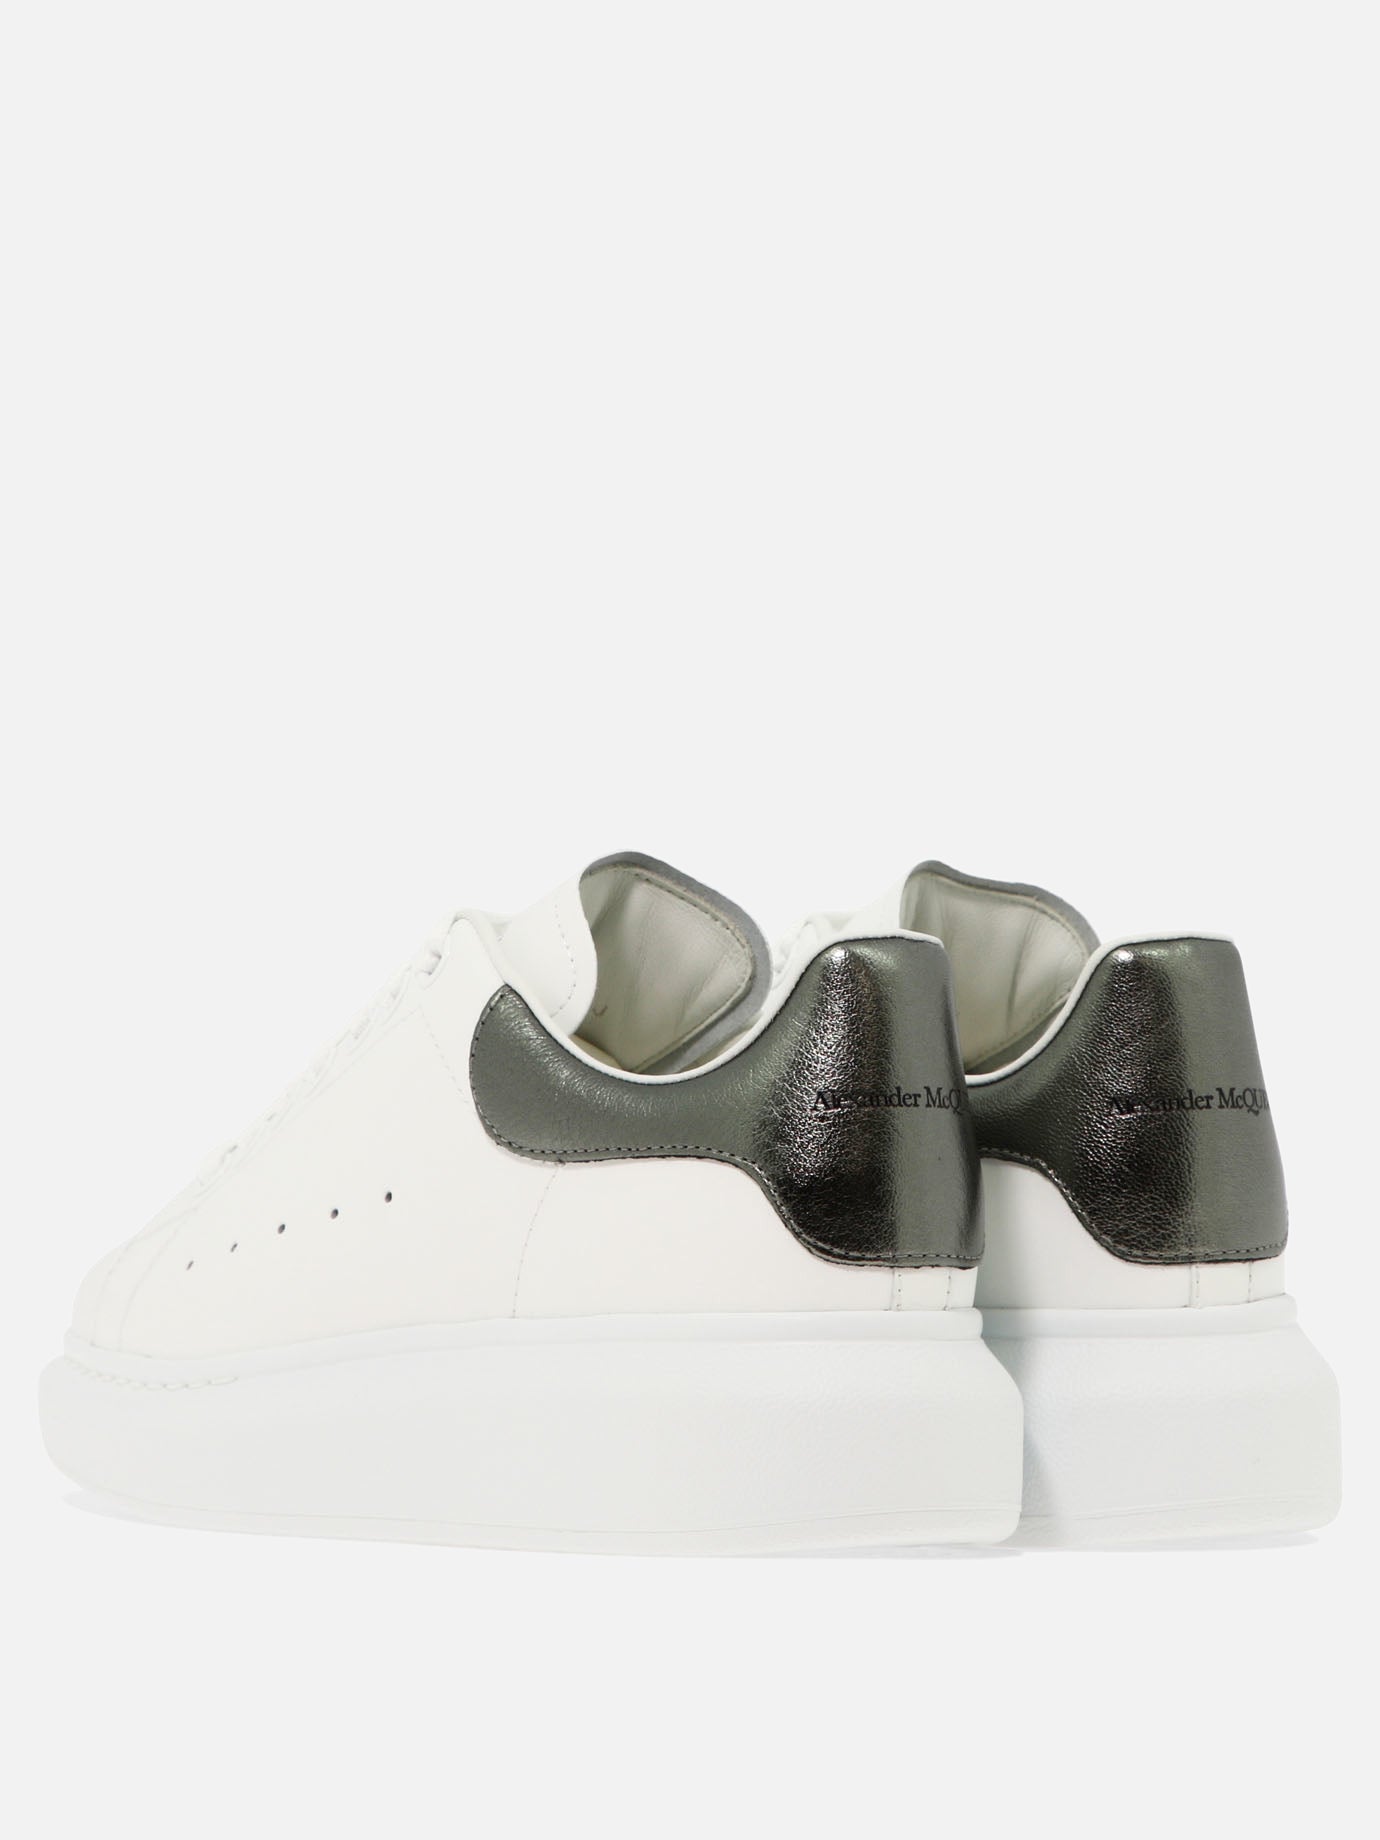 Alexander McQueen "Larry Oversize" sneakers White